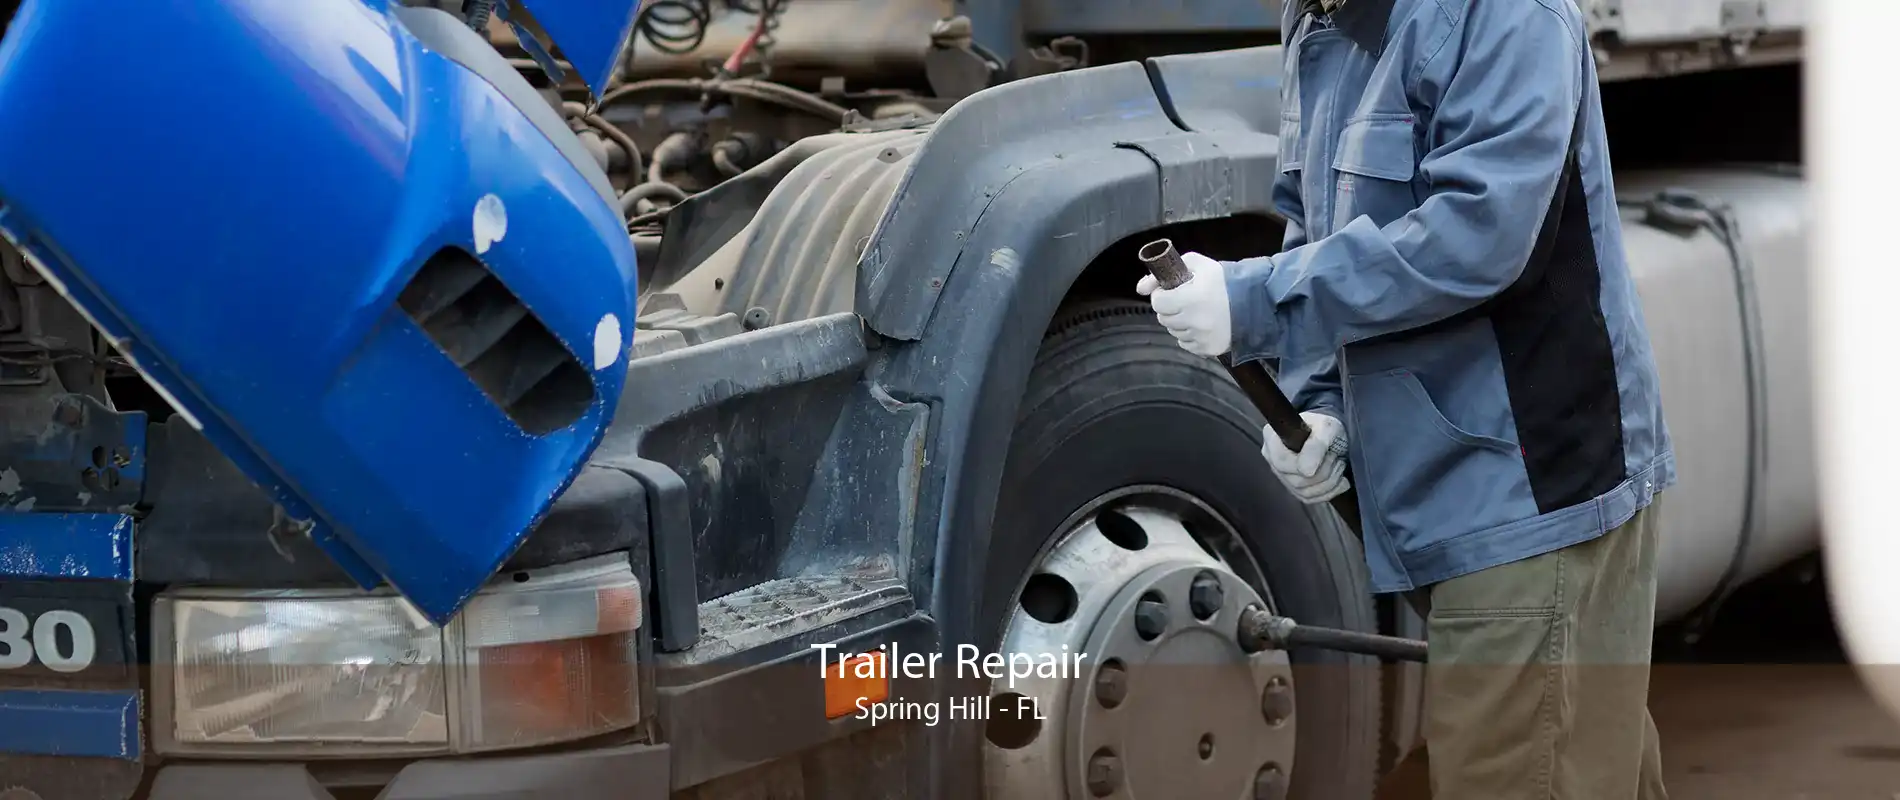 Trailer Repair Spring Hill - FL